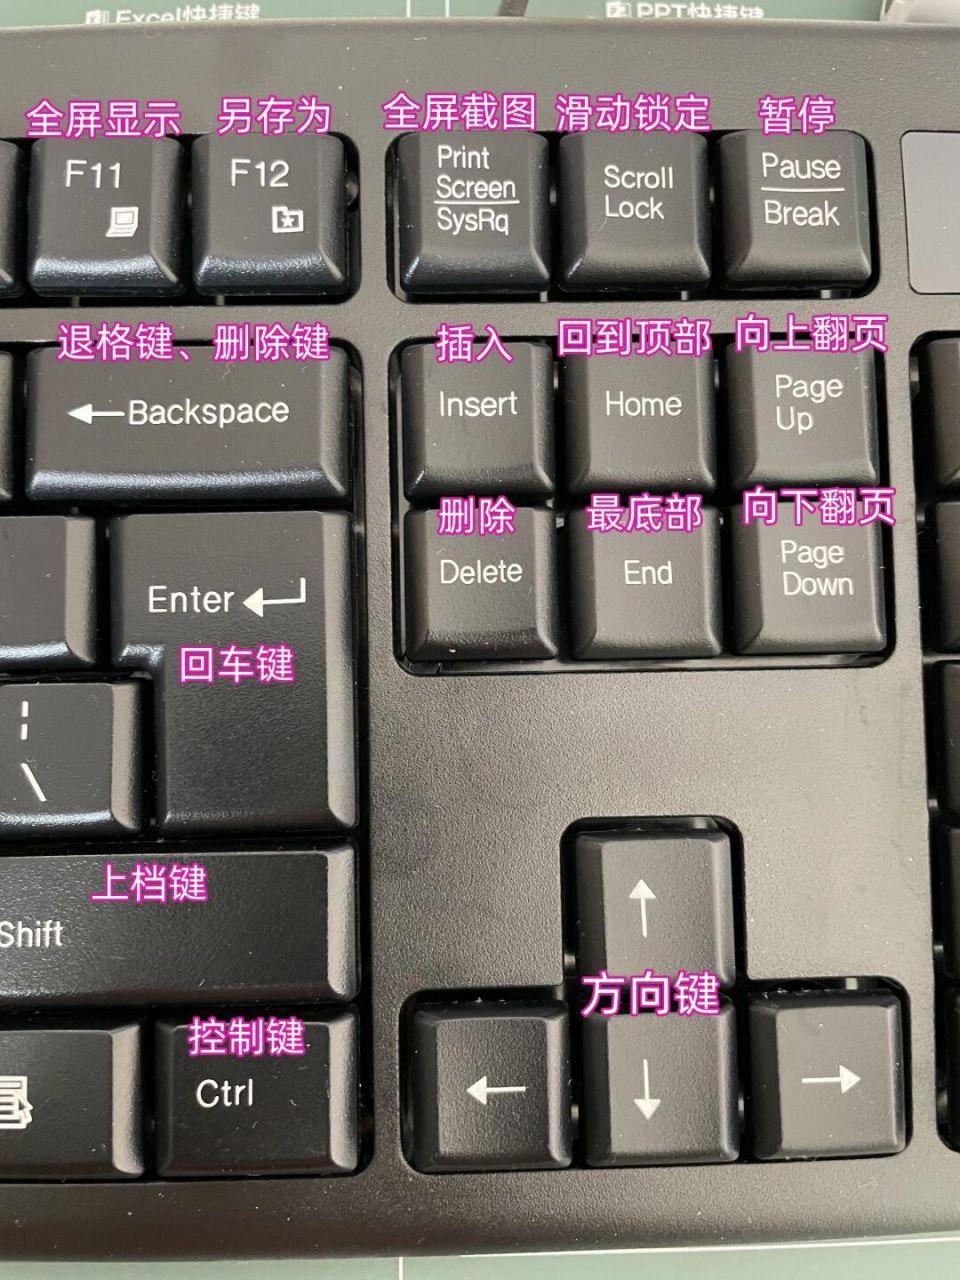 键盘快捷键截图图片